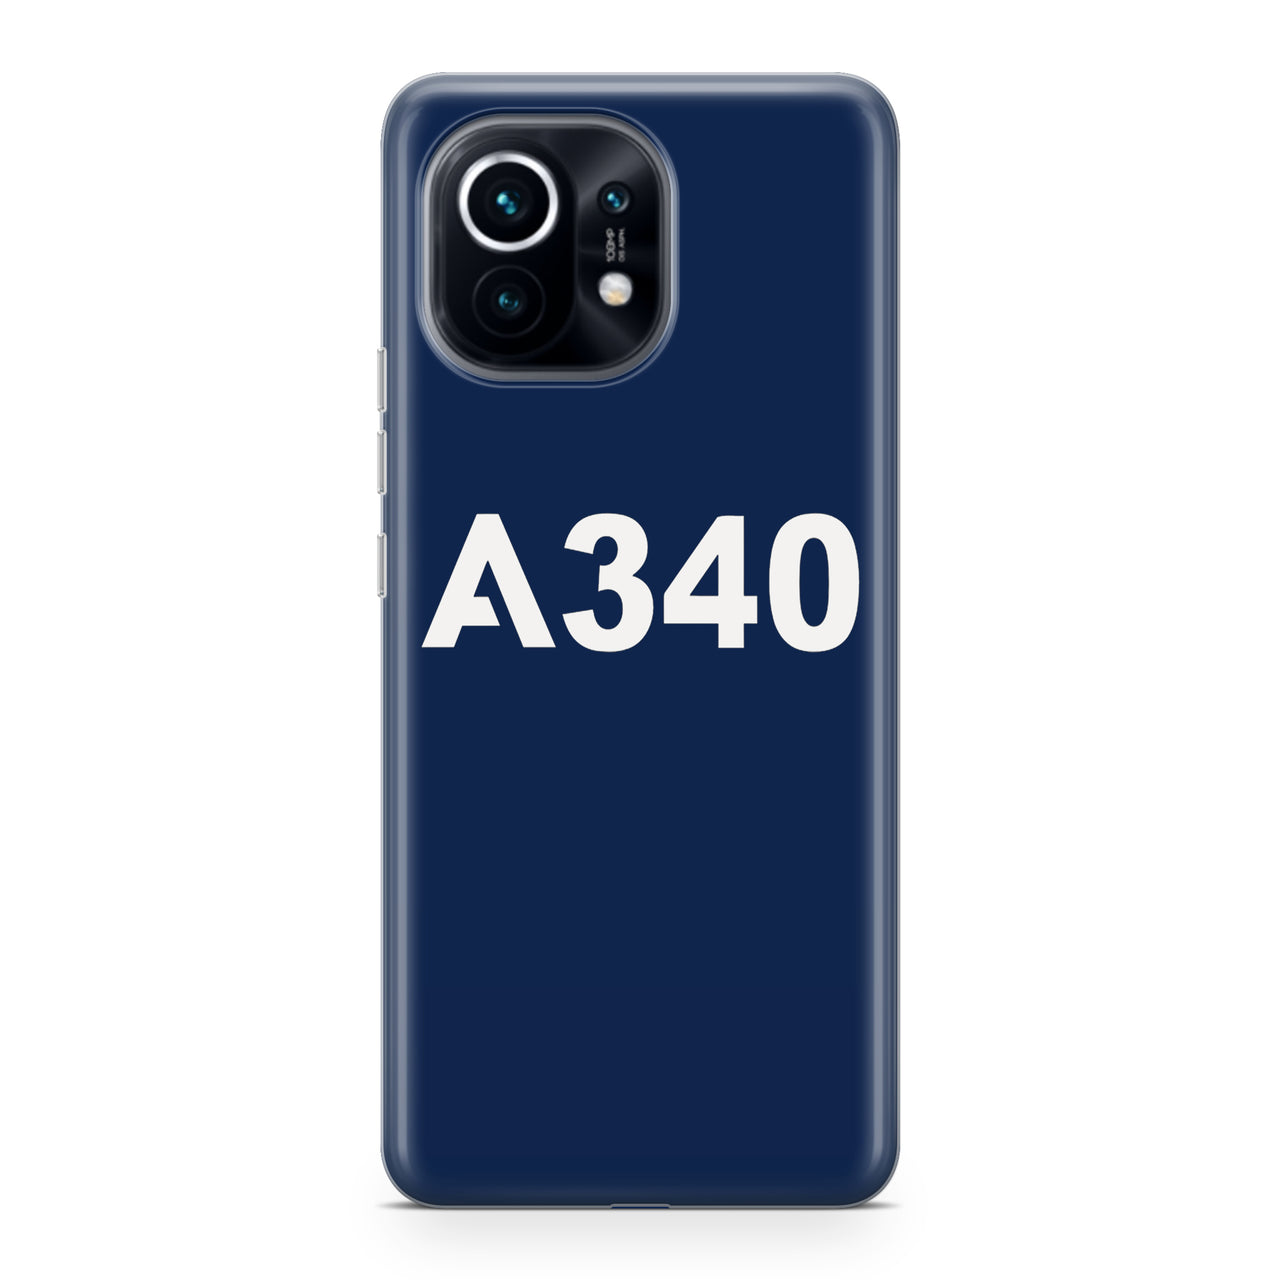 A340 Flat Text Designed Xiaomi Cases